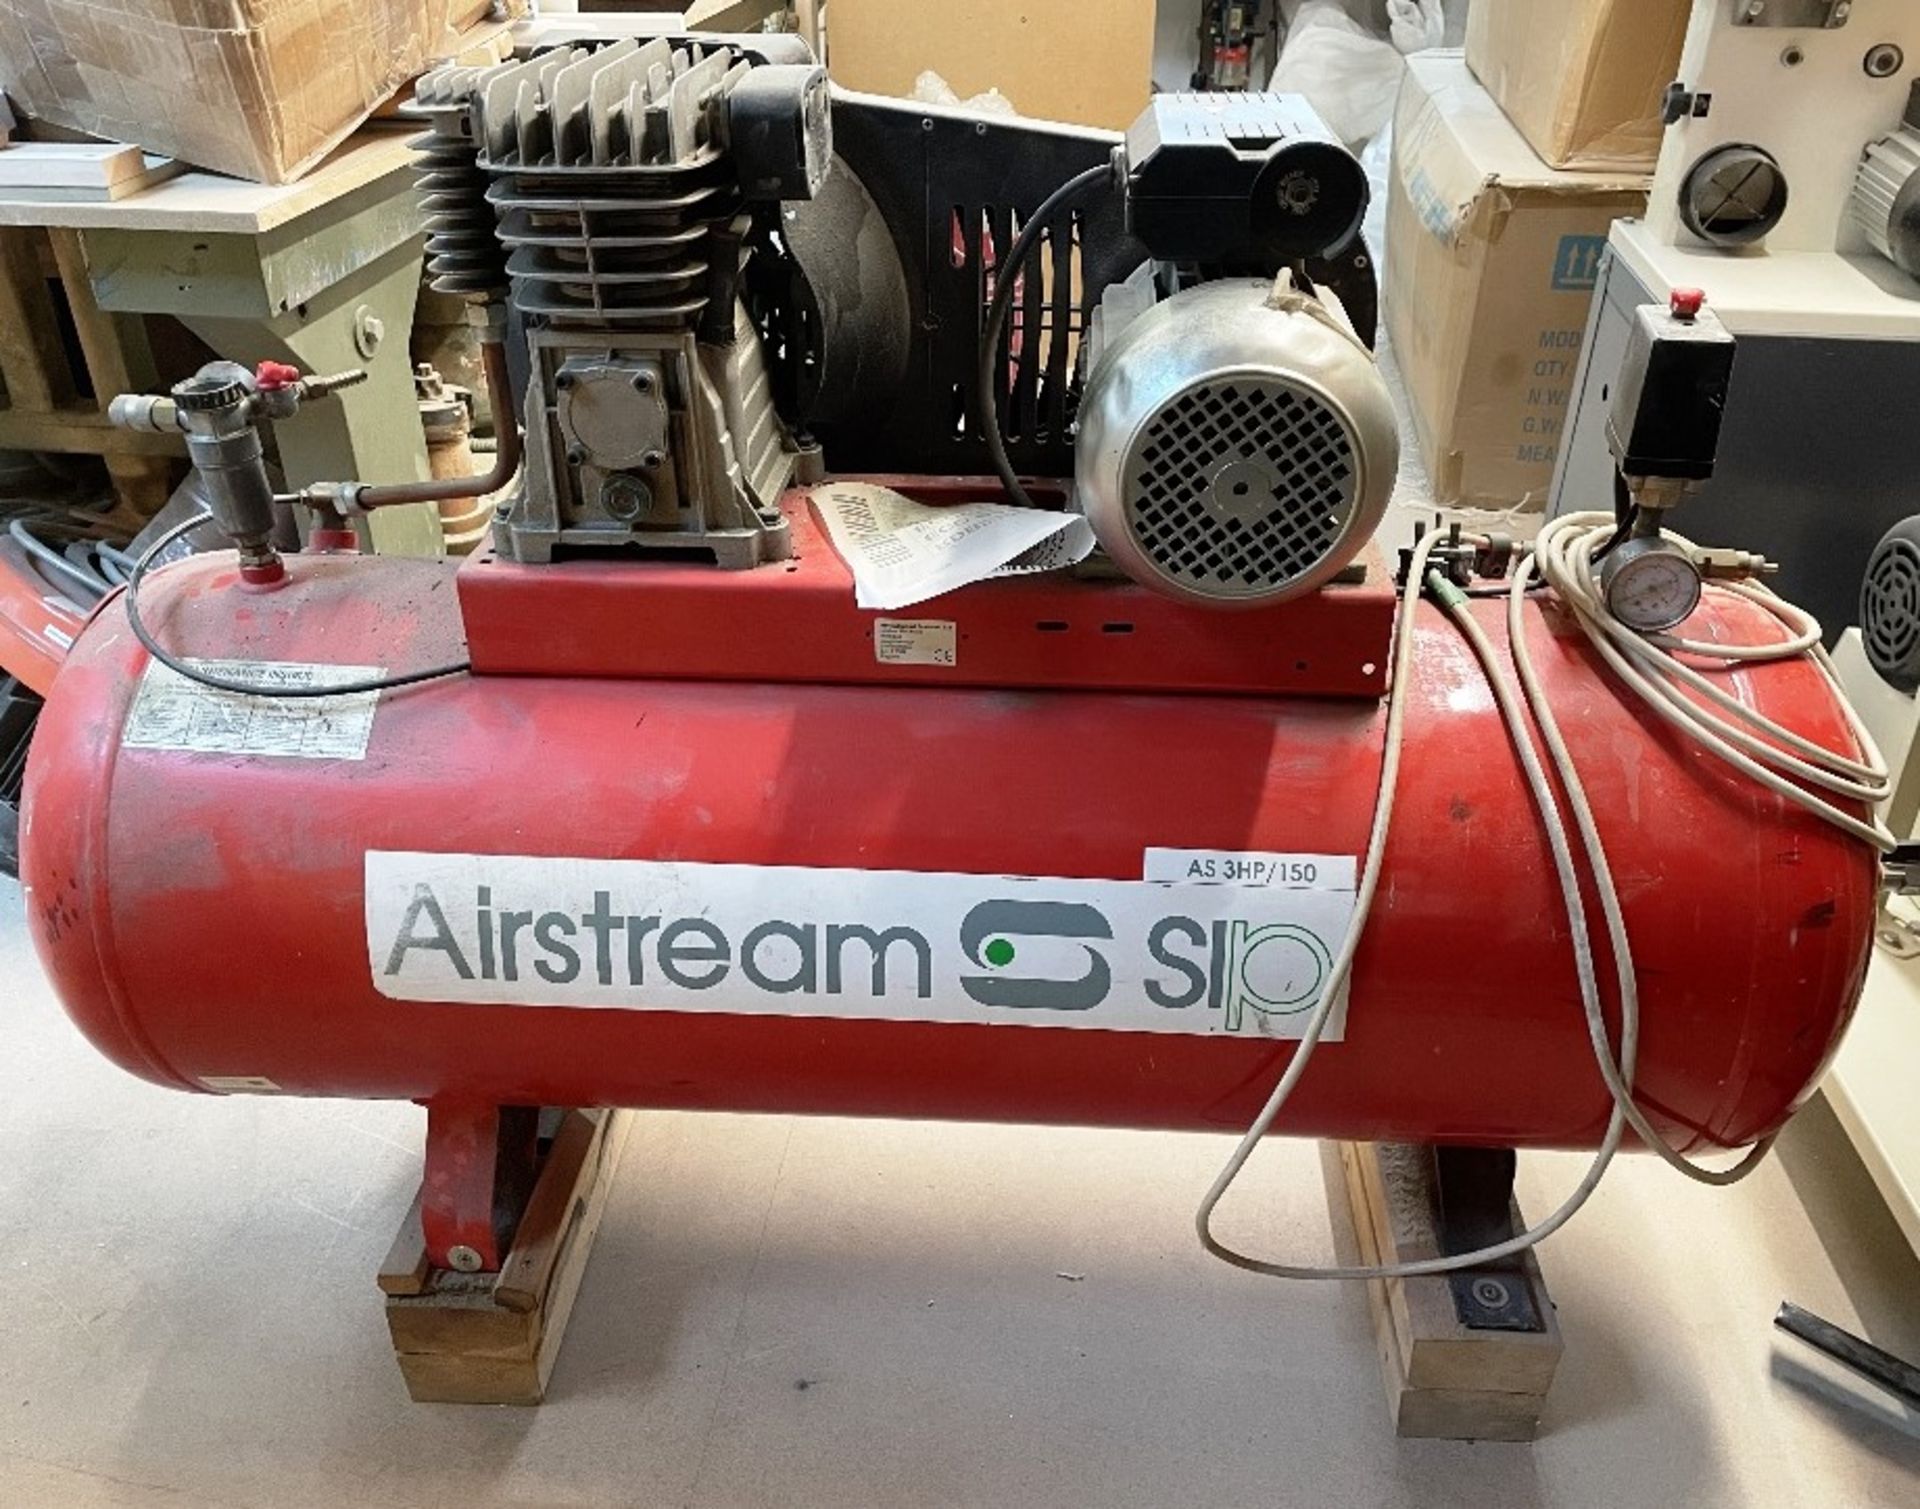 SIP Airstream AS 3HP/150Ltr Air Compressor